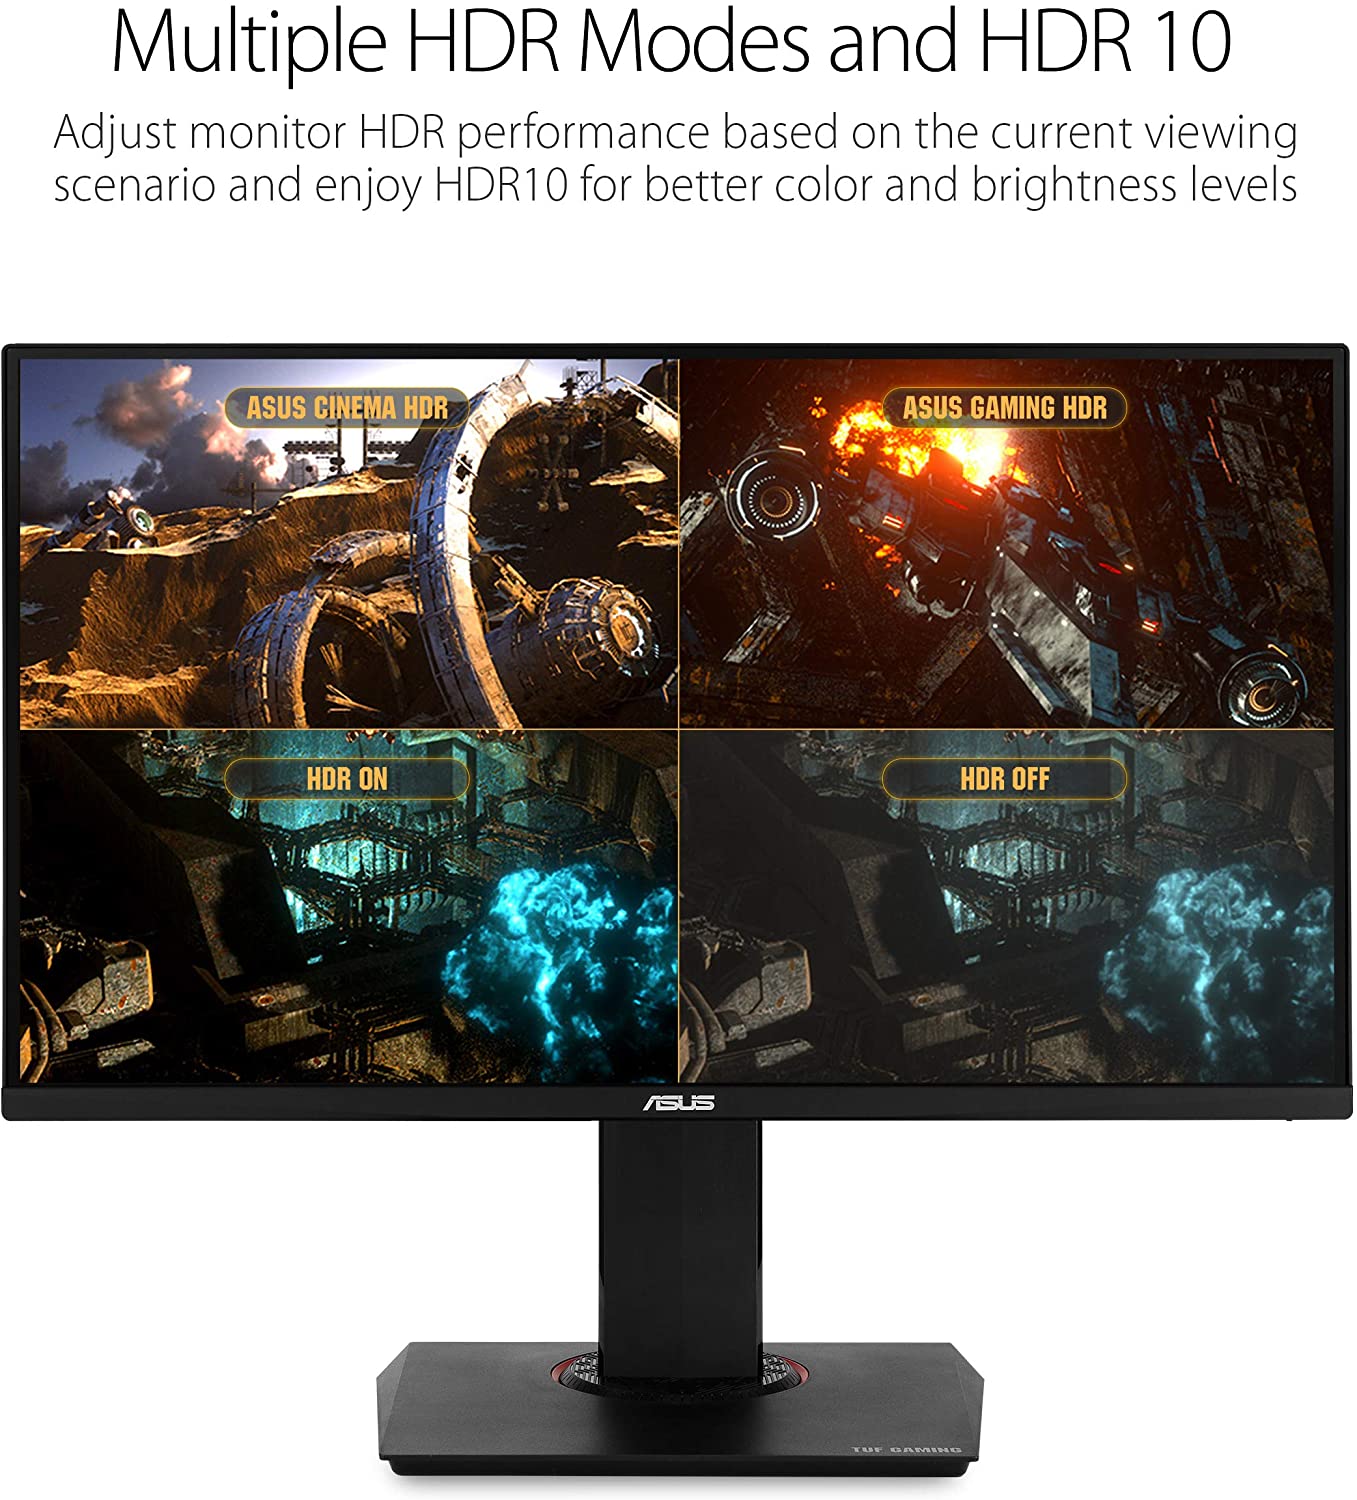 ASUS TUF Gaming VG289Q 28"HDR Gaming Monitor 4K (3840 x 2160) IPS FreeSync Eye Care DisplayPort Dual HDMI HDR 10, NOIR